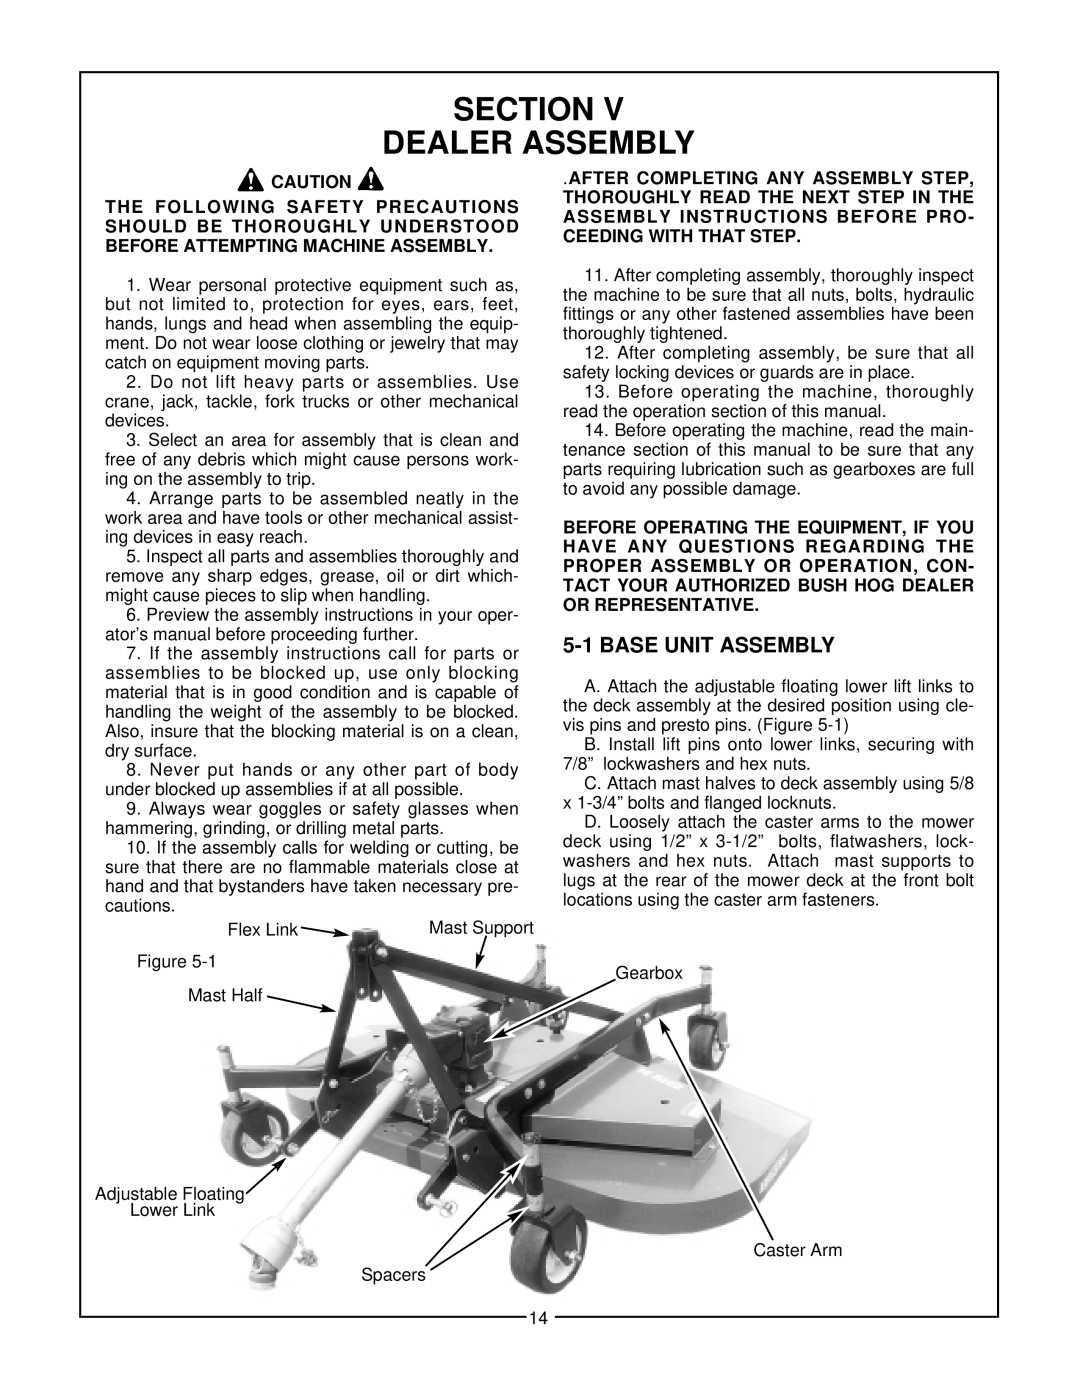 Bush Hog RDTH 84 manual Section Dealer Assembly 